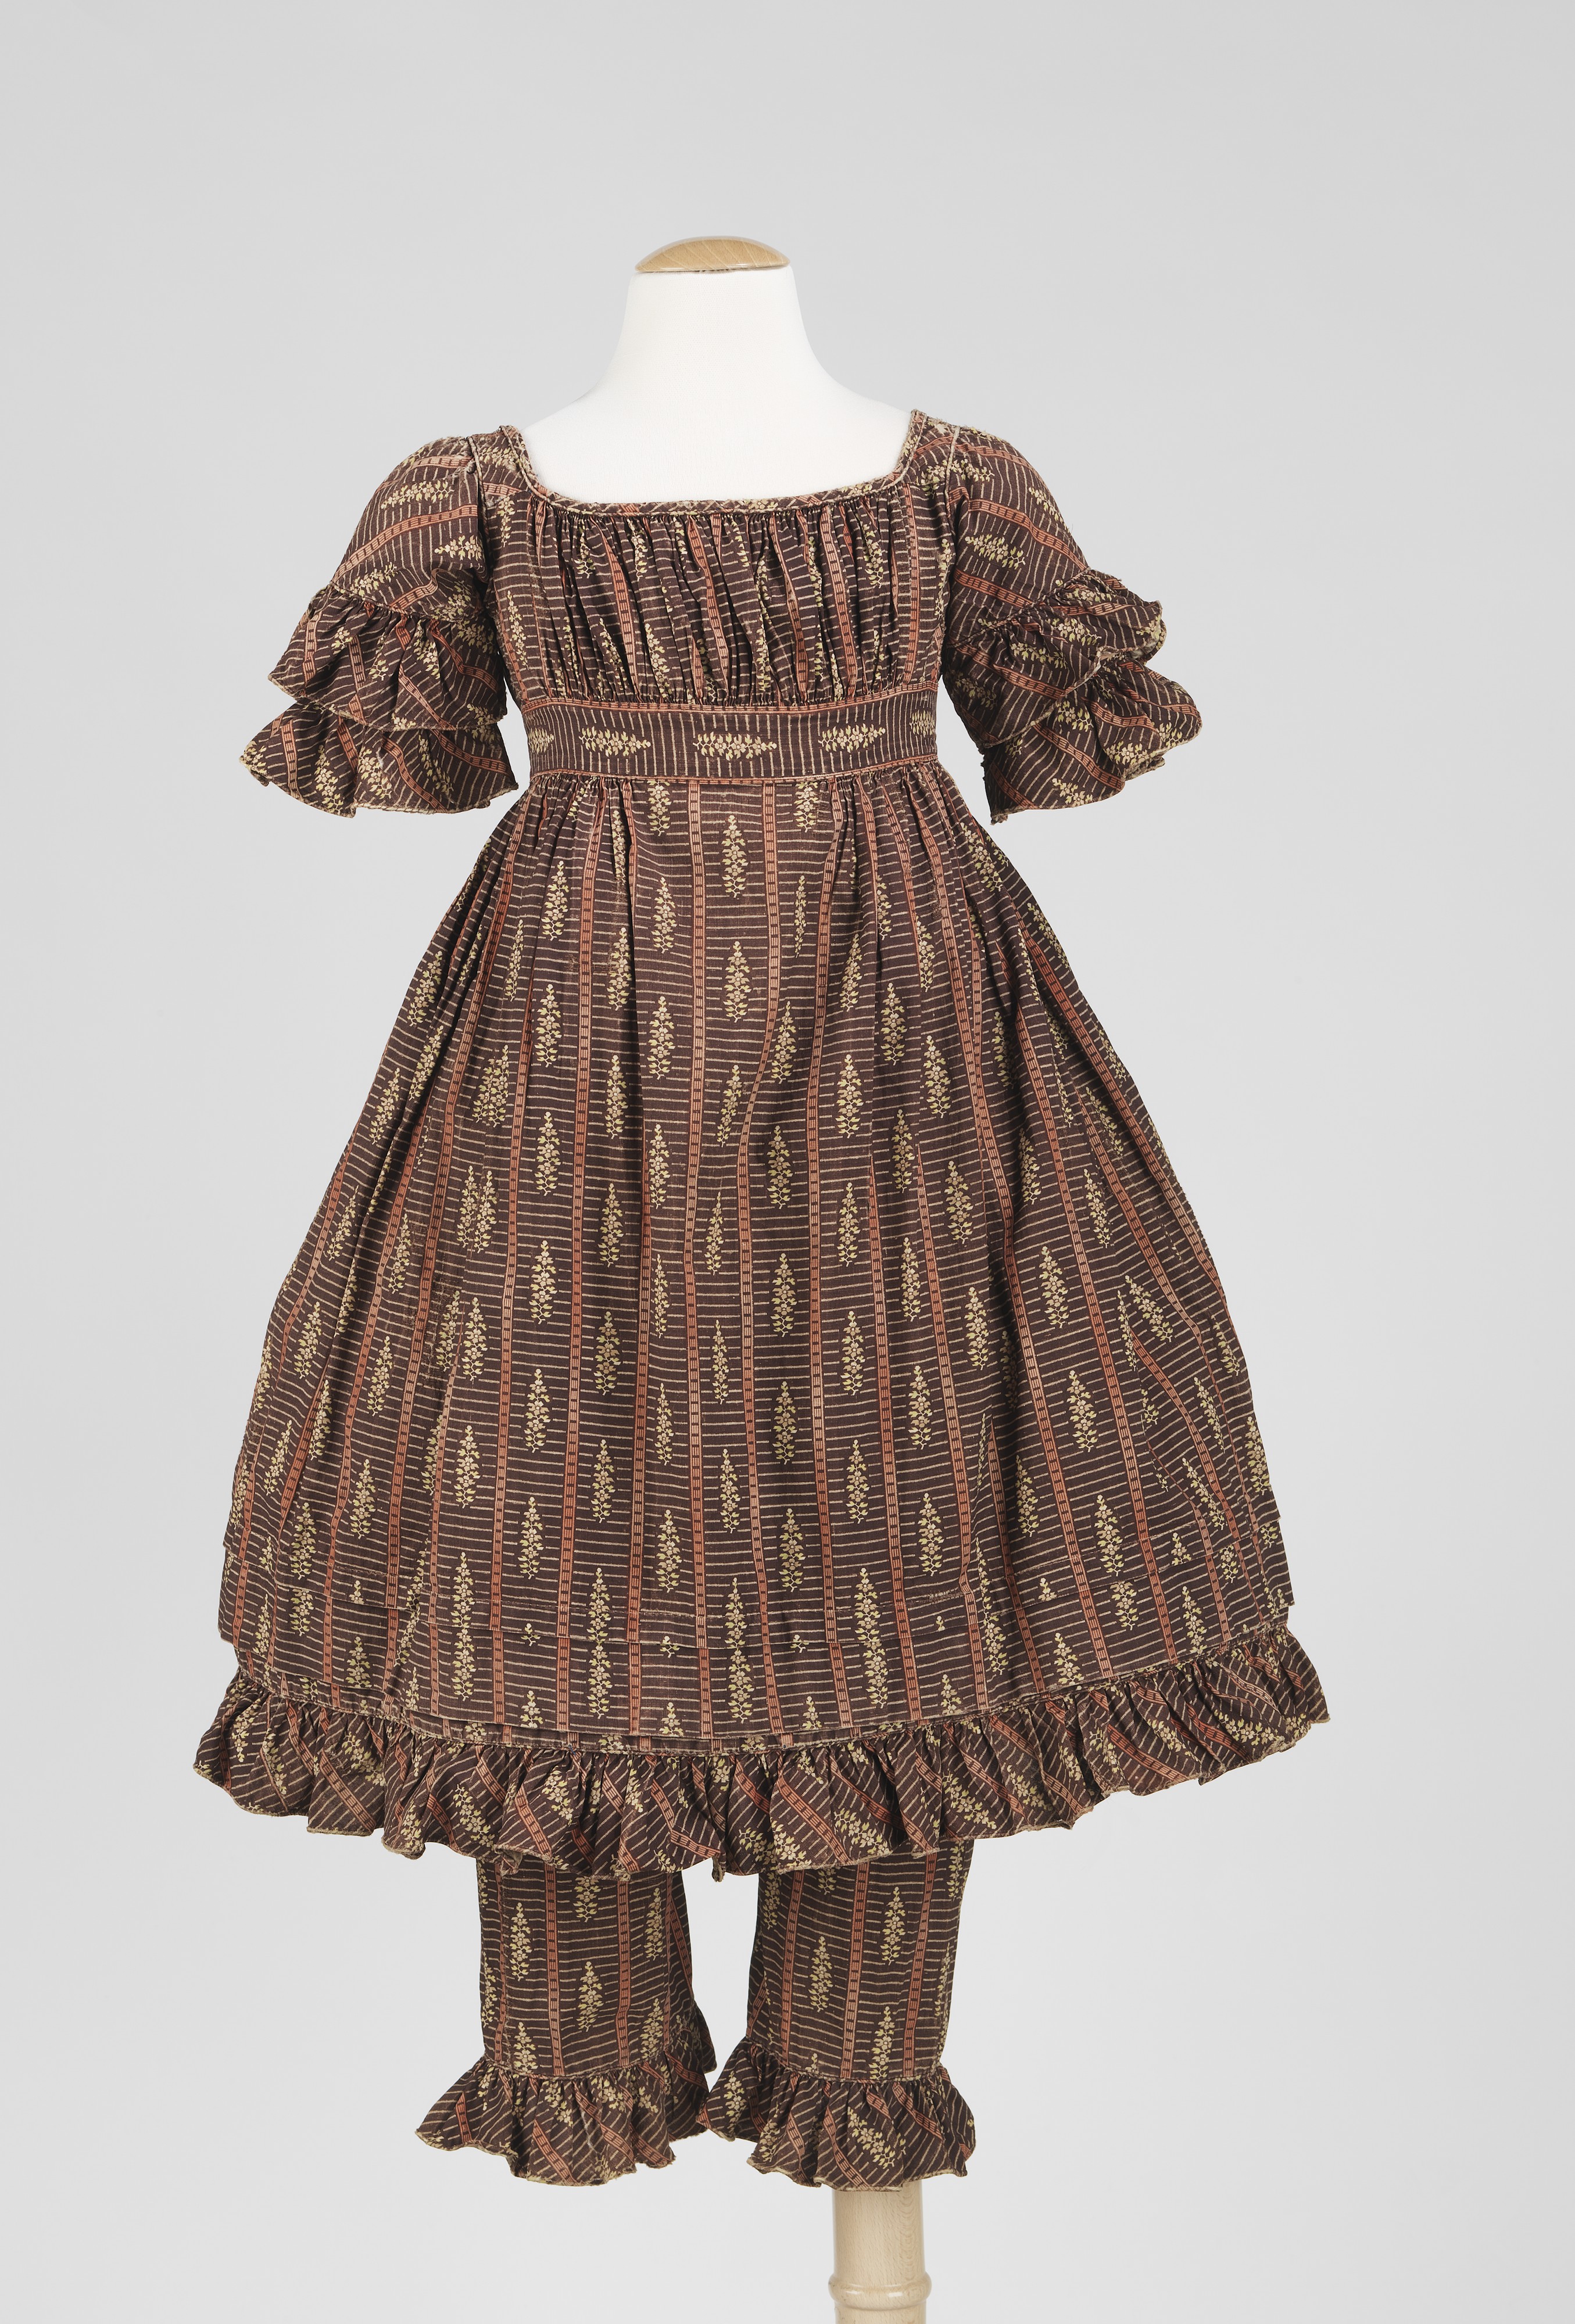 Одежда дете 19 век